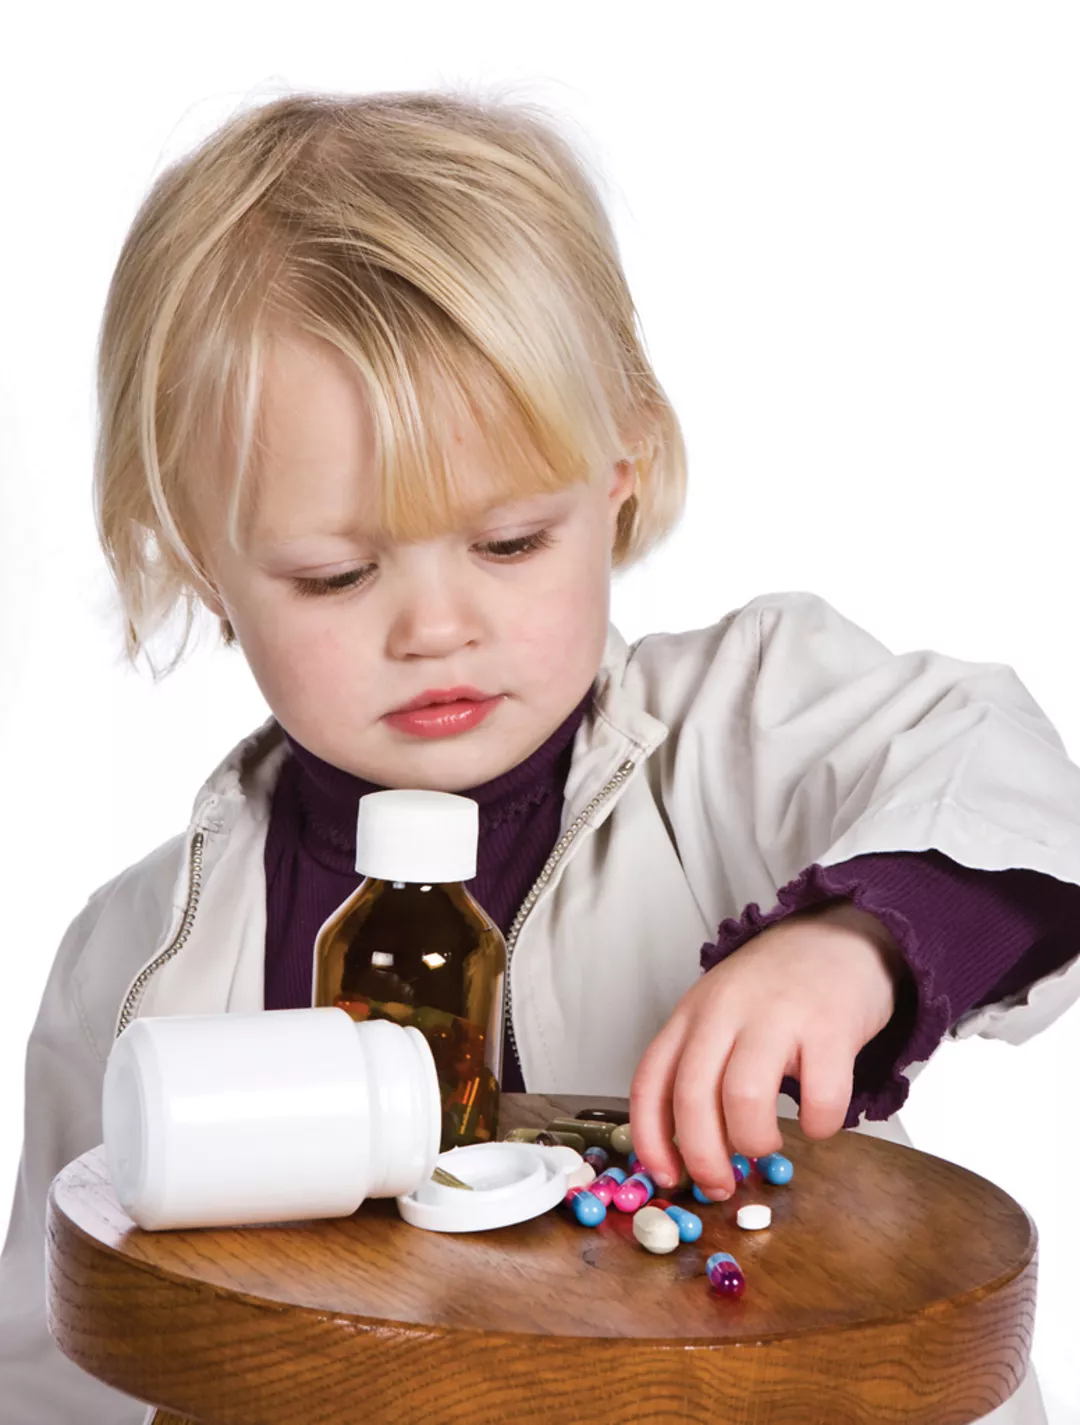 Дети ни в коем случае не должны играть с лекарствами